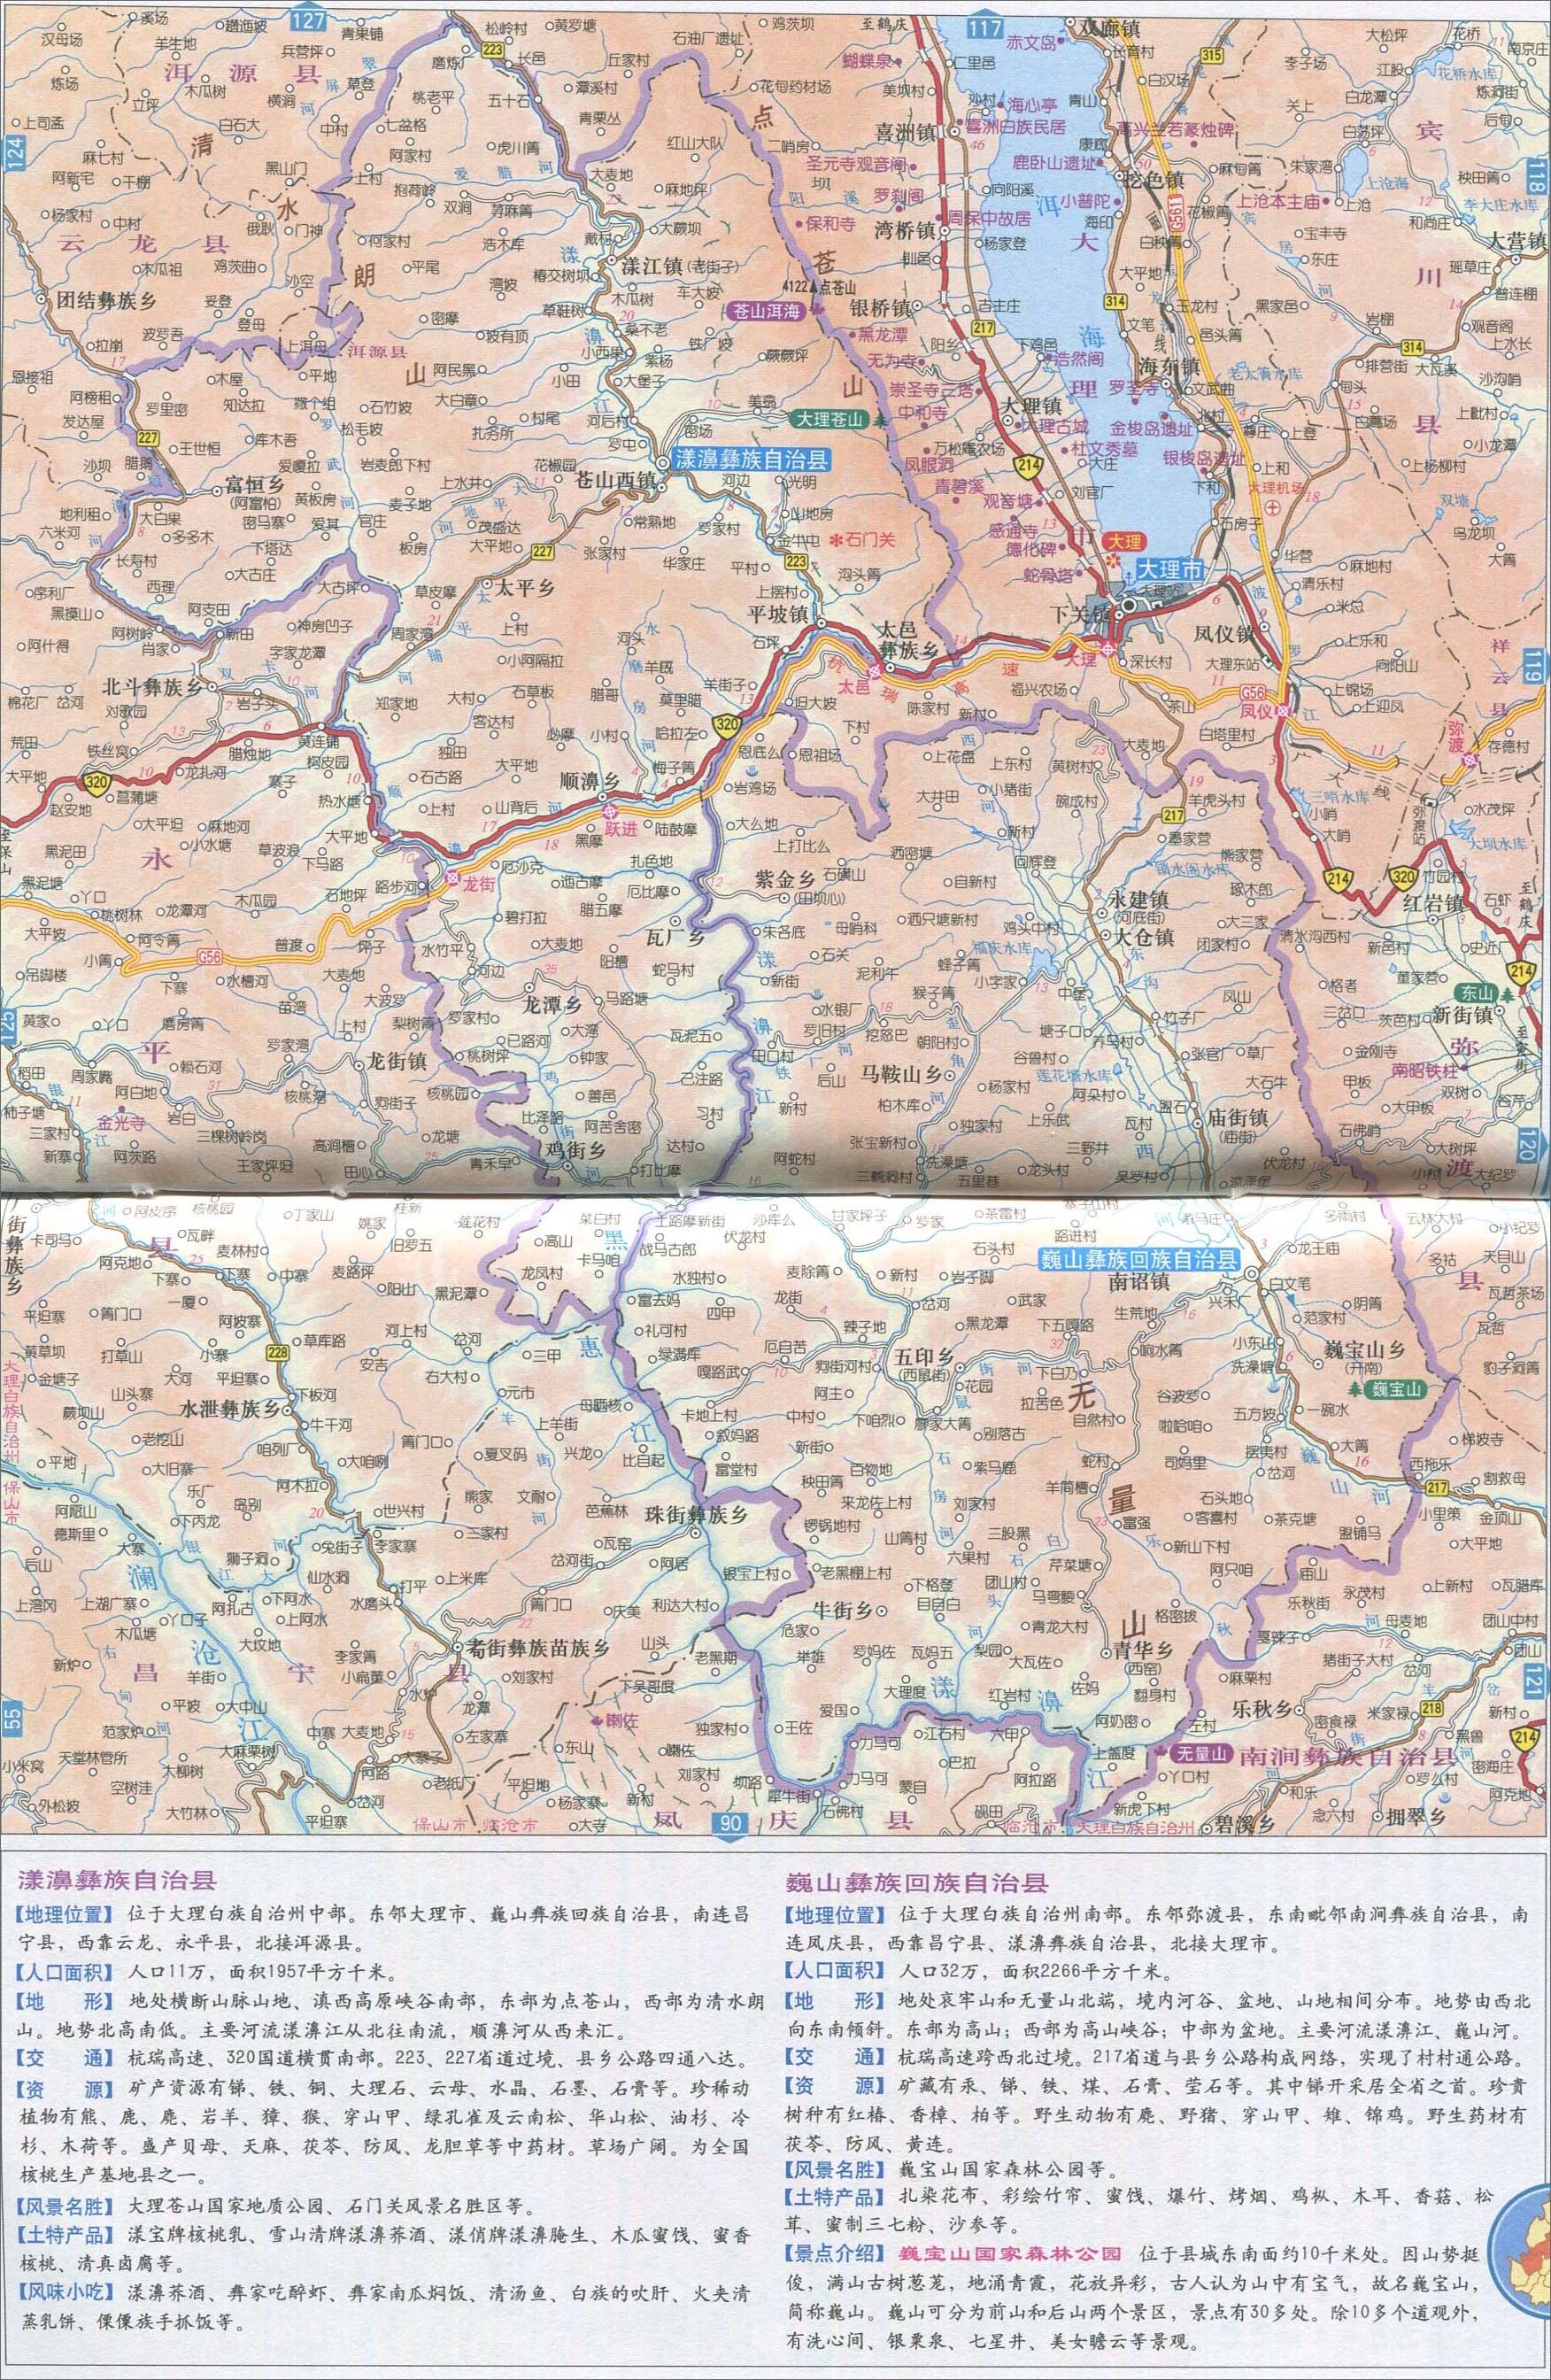 下一幅地图: 弥渡县地图图片